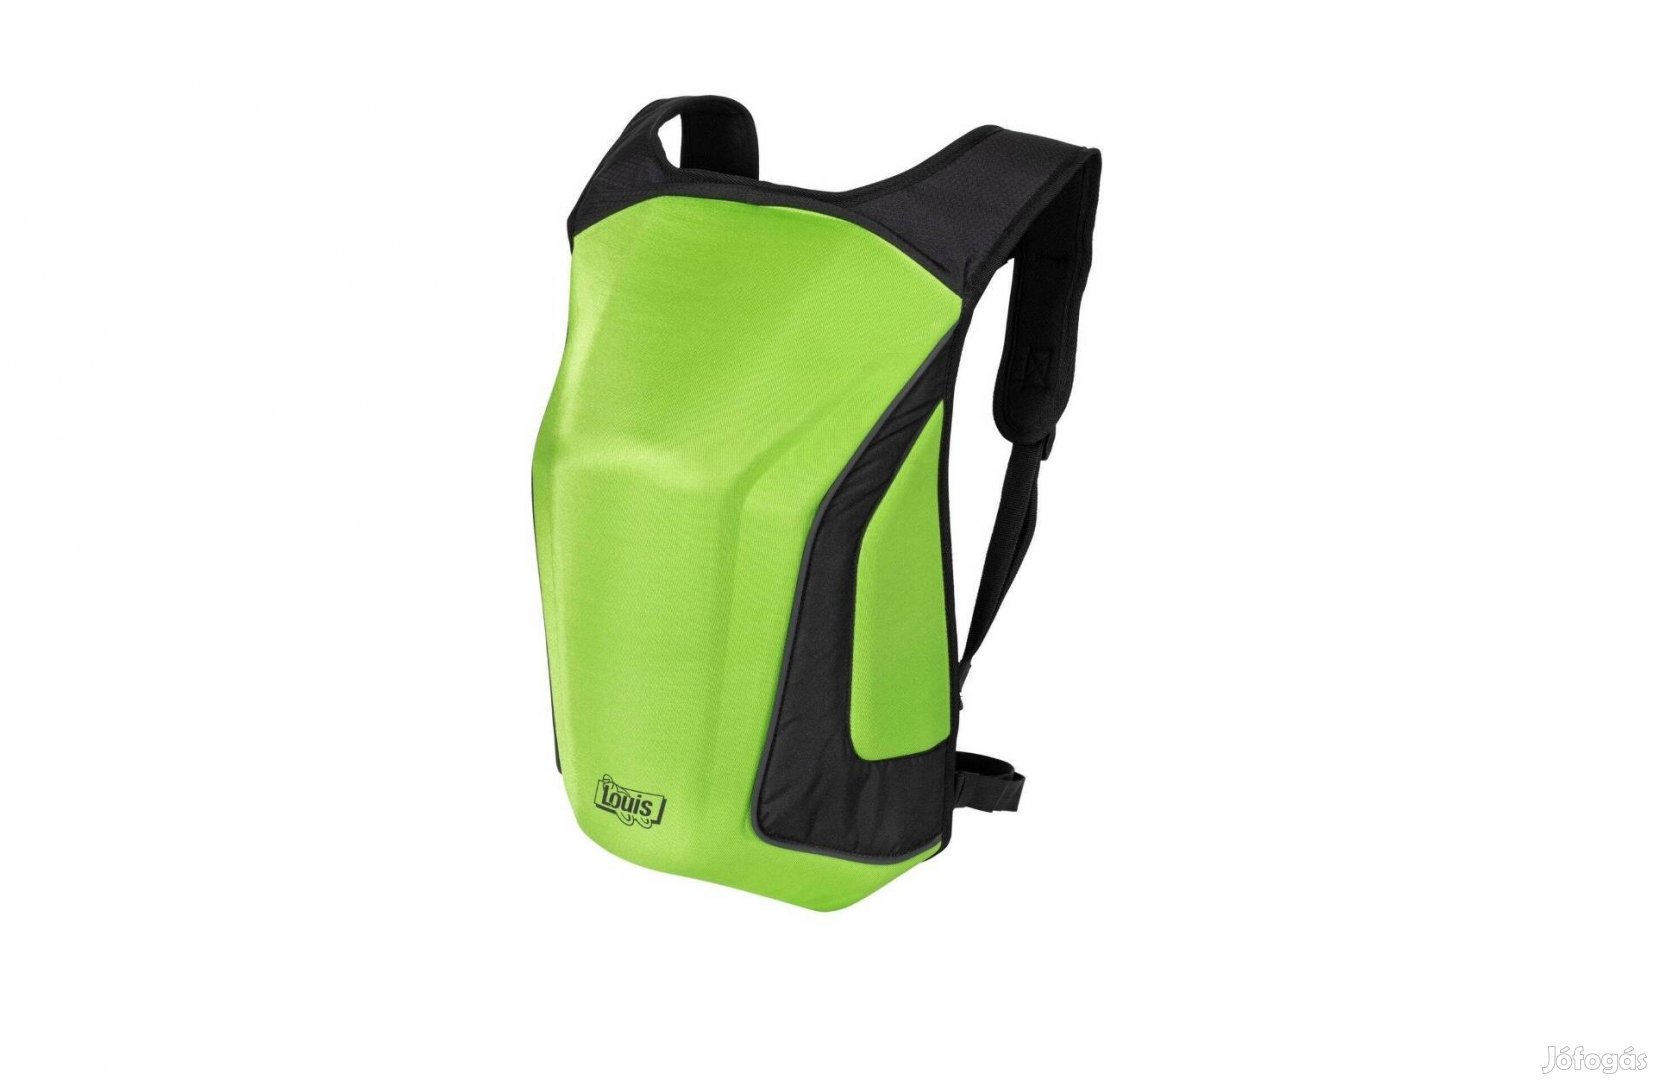 Új Louis zöld színű, merevfalú motoros hátizsák (18 liter)